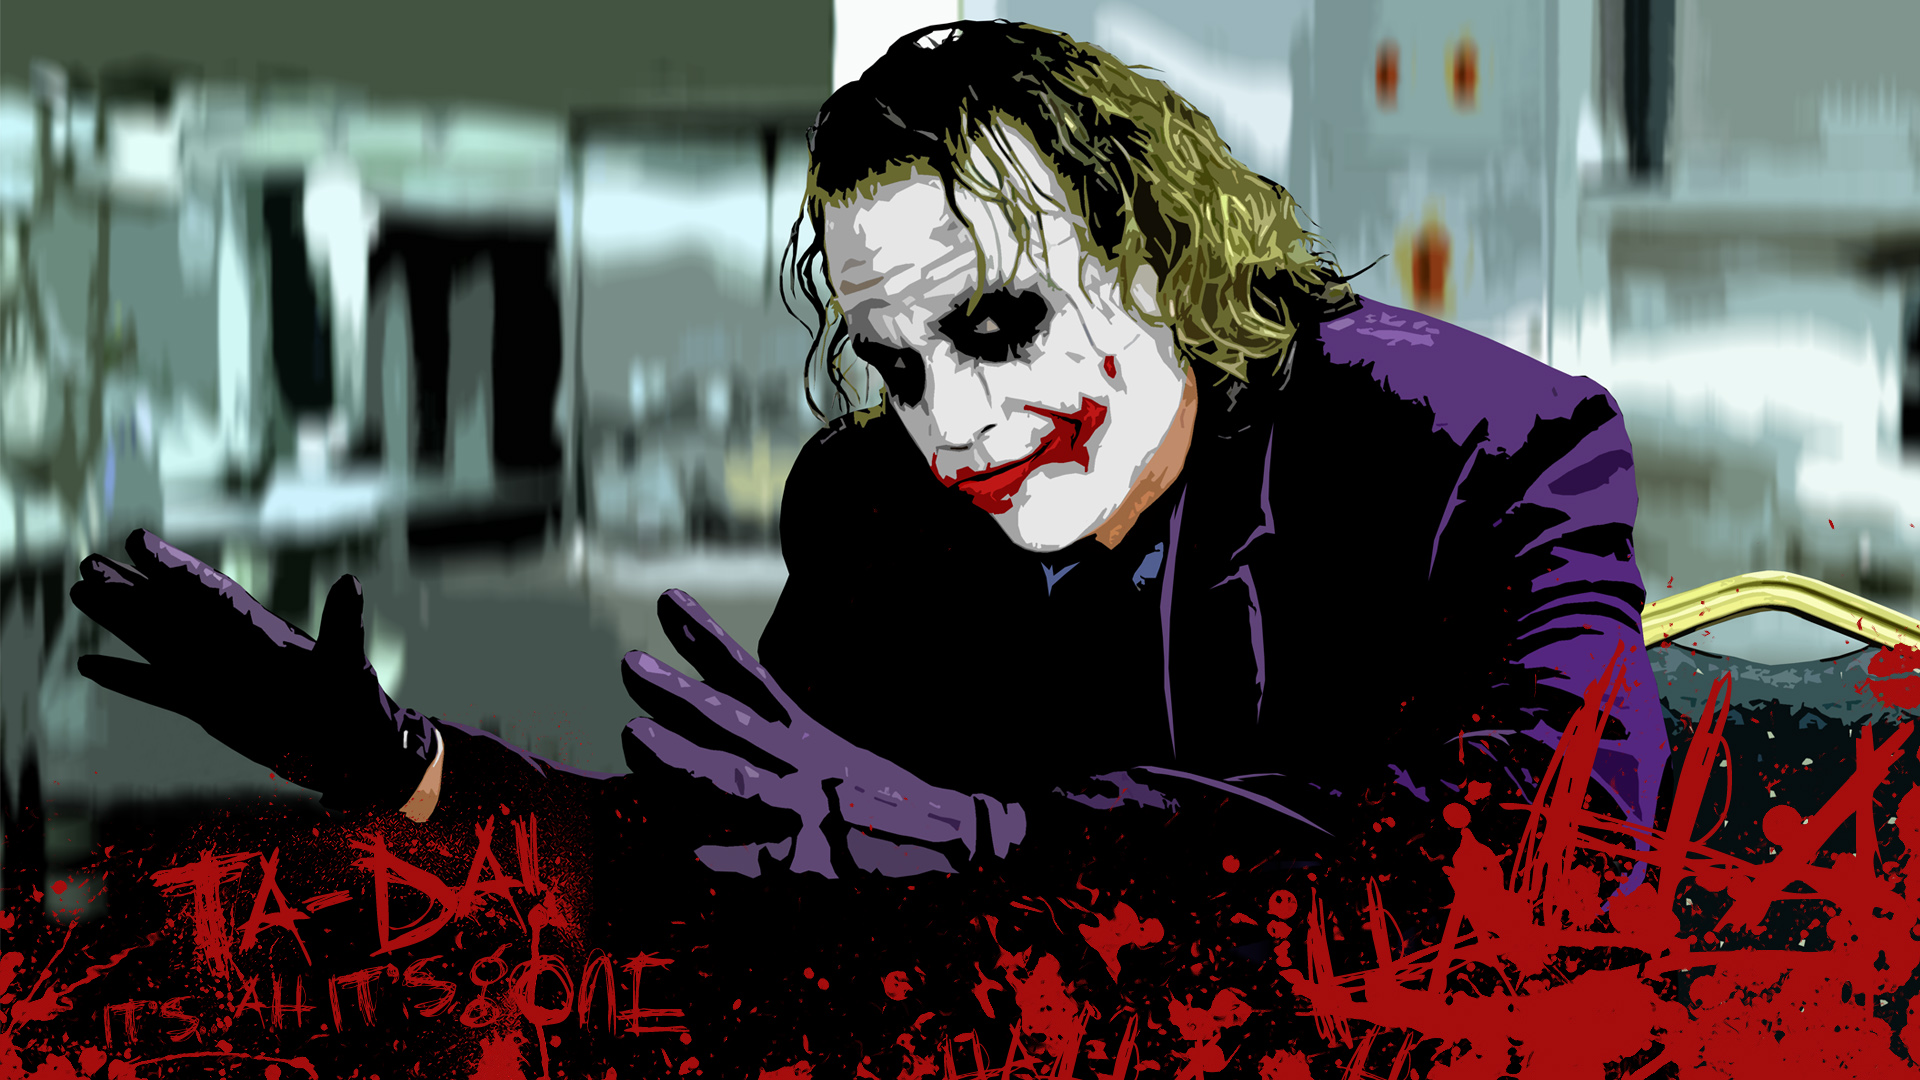 Wallpaper Joker Full Hd Android